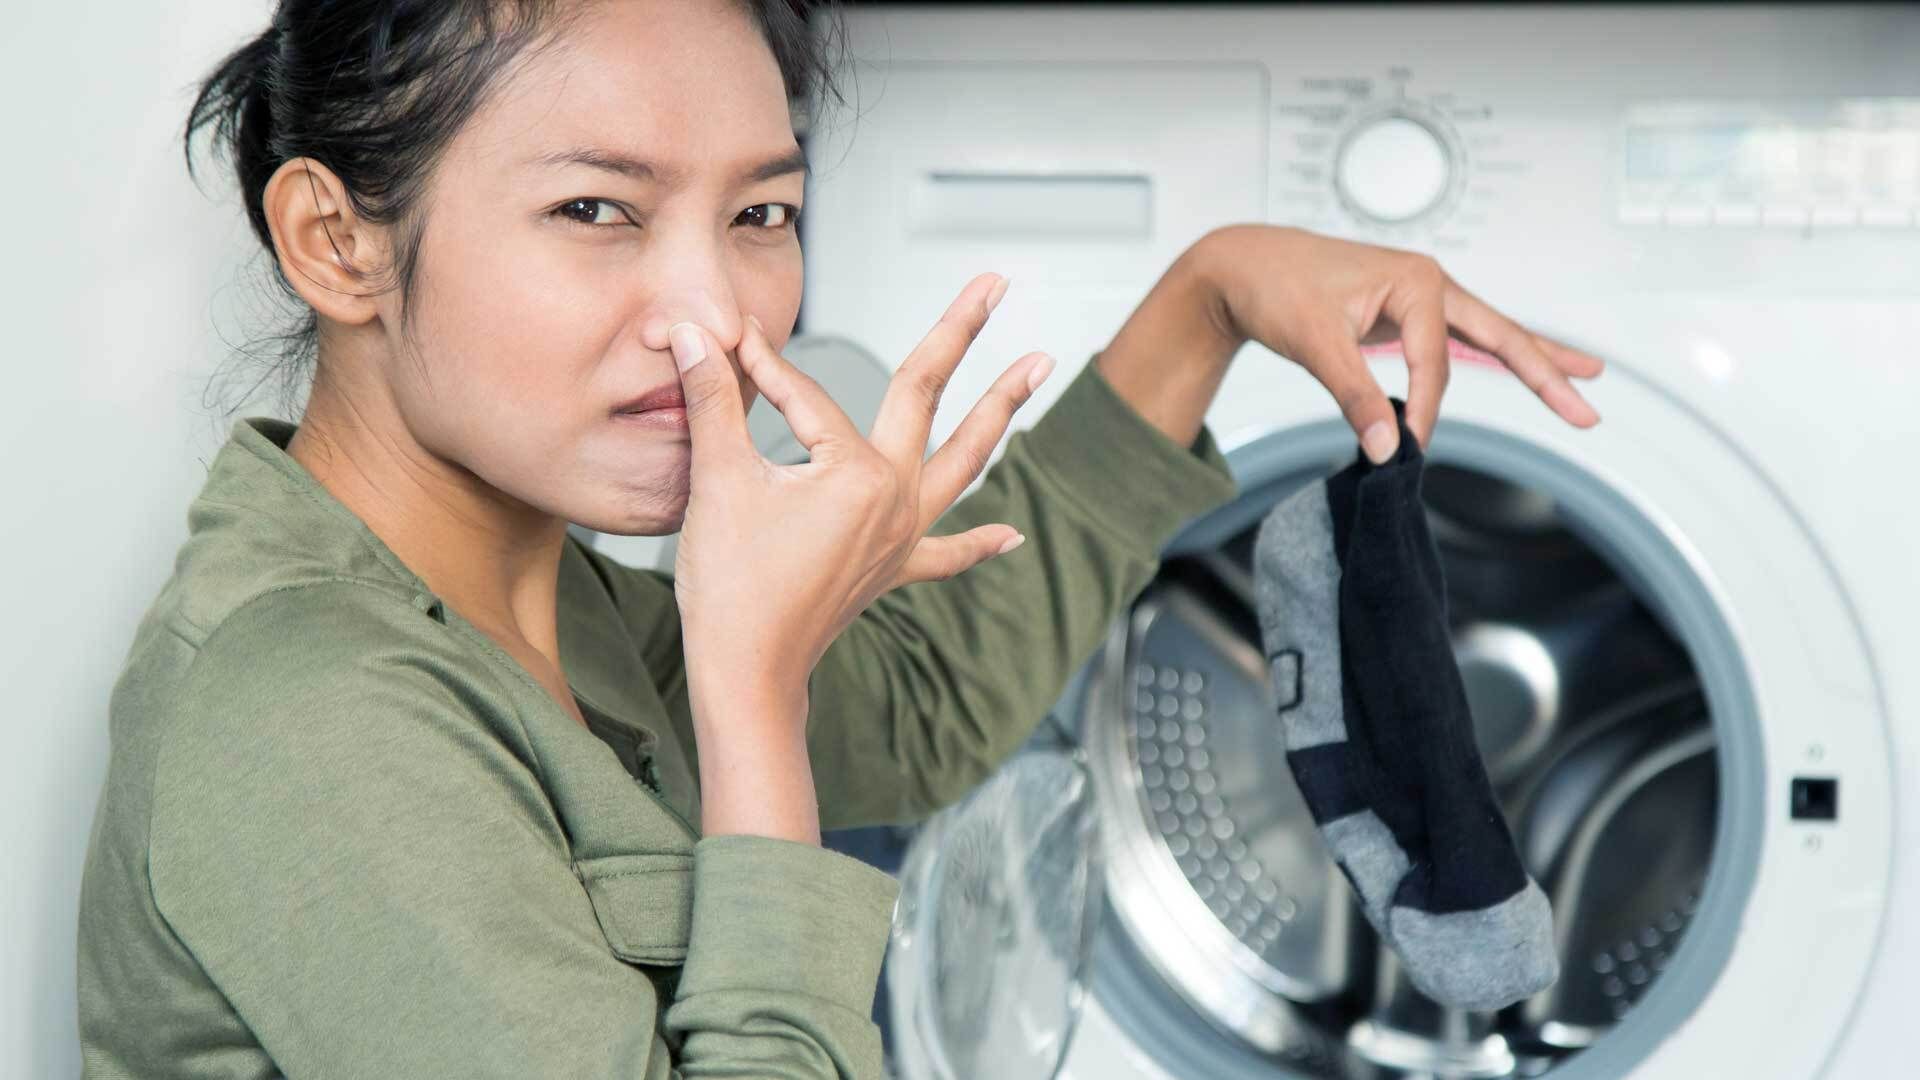 Waschmaschine stinkt? Diese häufigen Fehler stecken dahinter